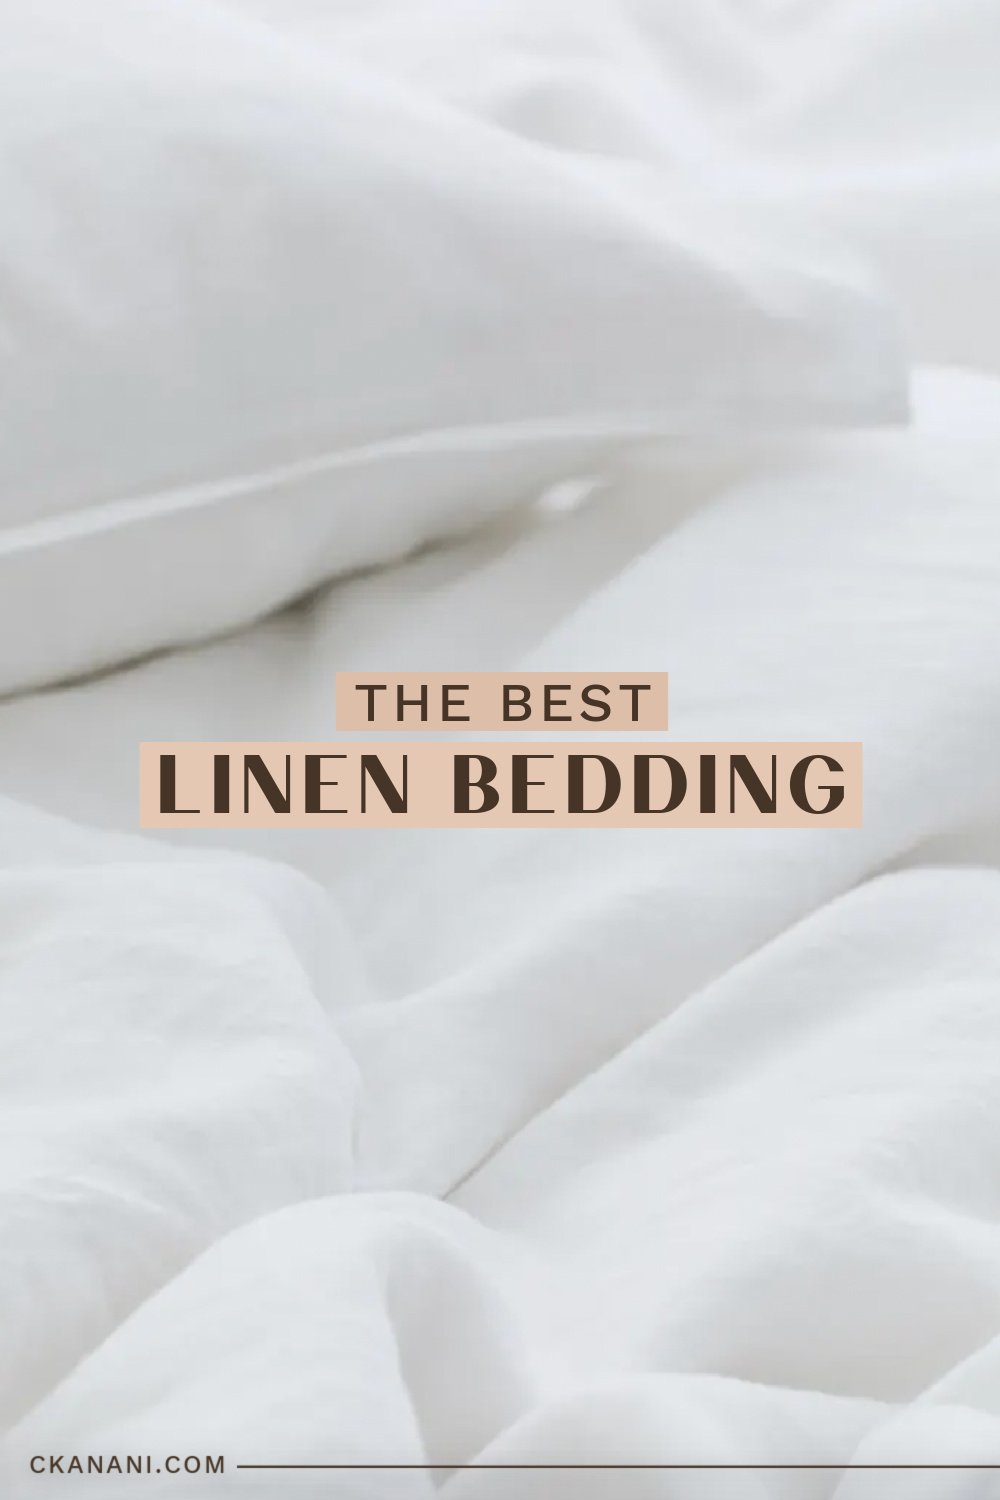 The best linen bedding